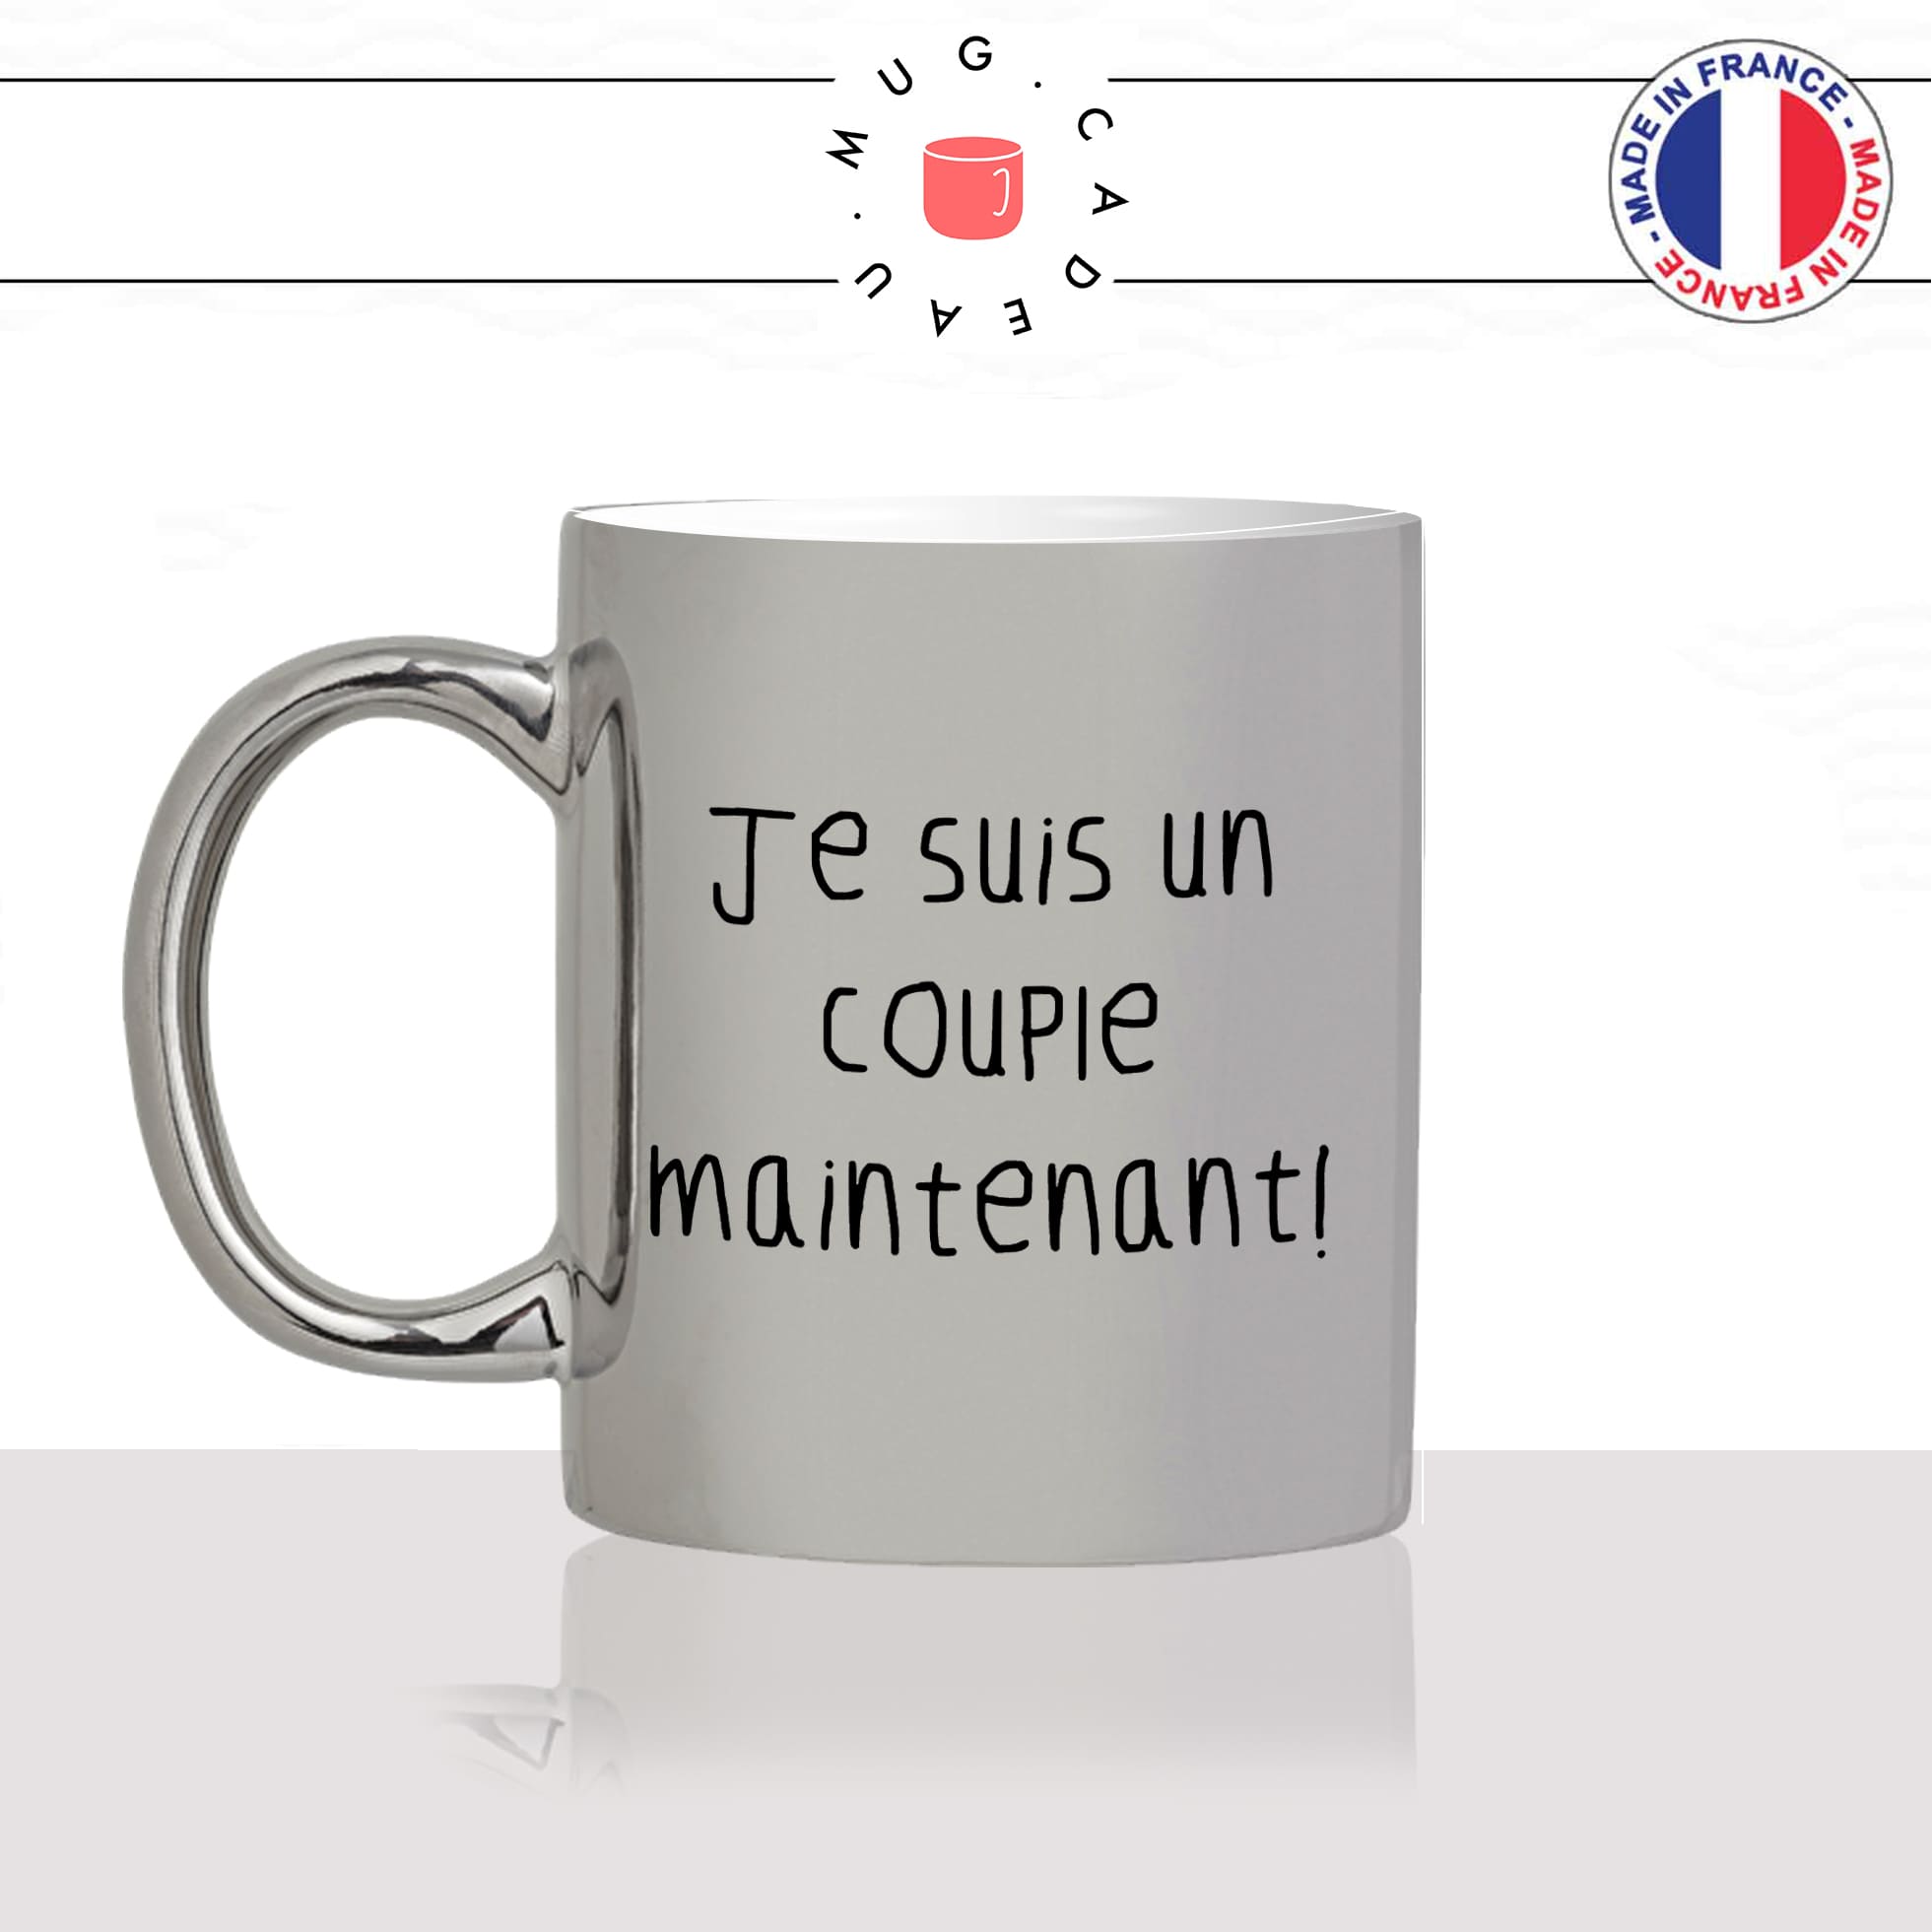 mug-tasse-argent-argenté-silver-film-francais-Rrrr-chabbat-collegue-homme-je-suis-un-couple-idée-cadeau-fun-cool-café-thé